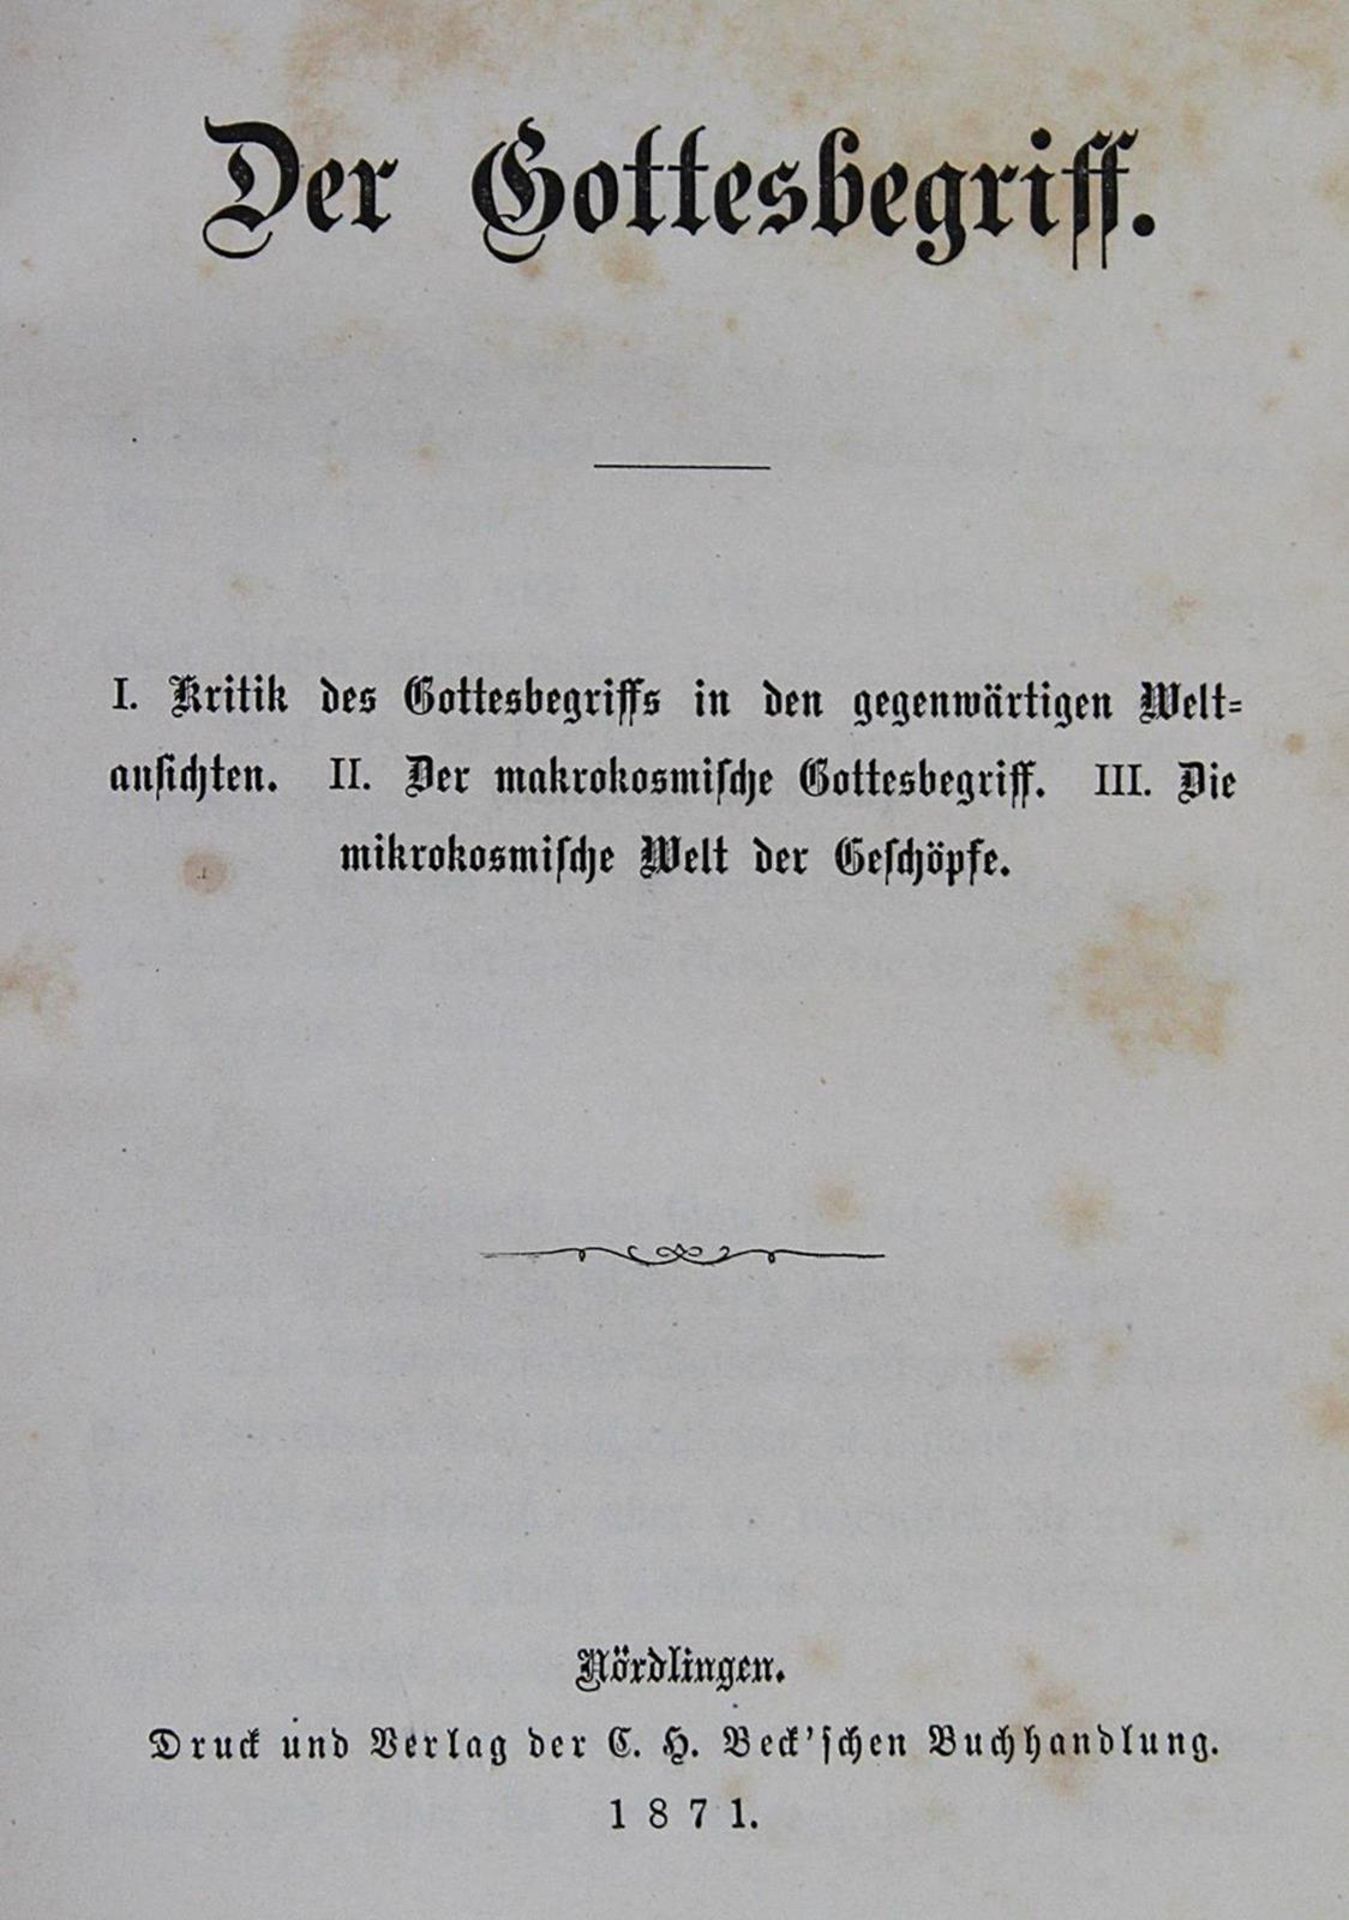 Gothaischer genealogischer Hof-Kalender.14 Bde. der Reihe. Gotha, Perthes 1825-70. Kl.8°. Mit S - Bild 2 aus 2